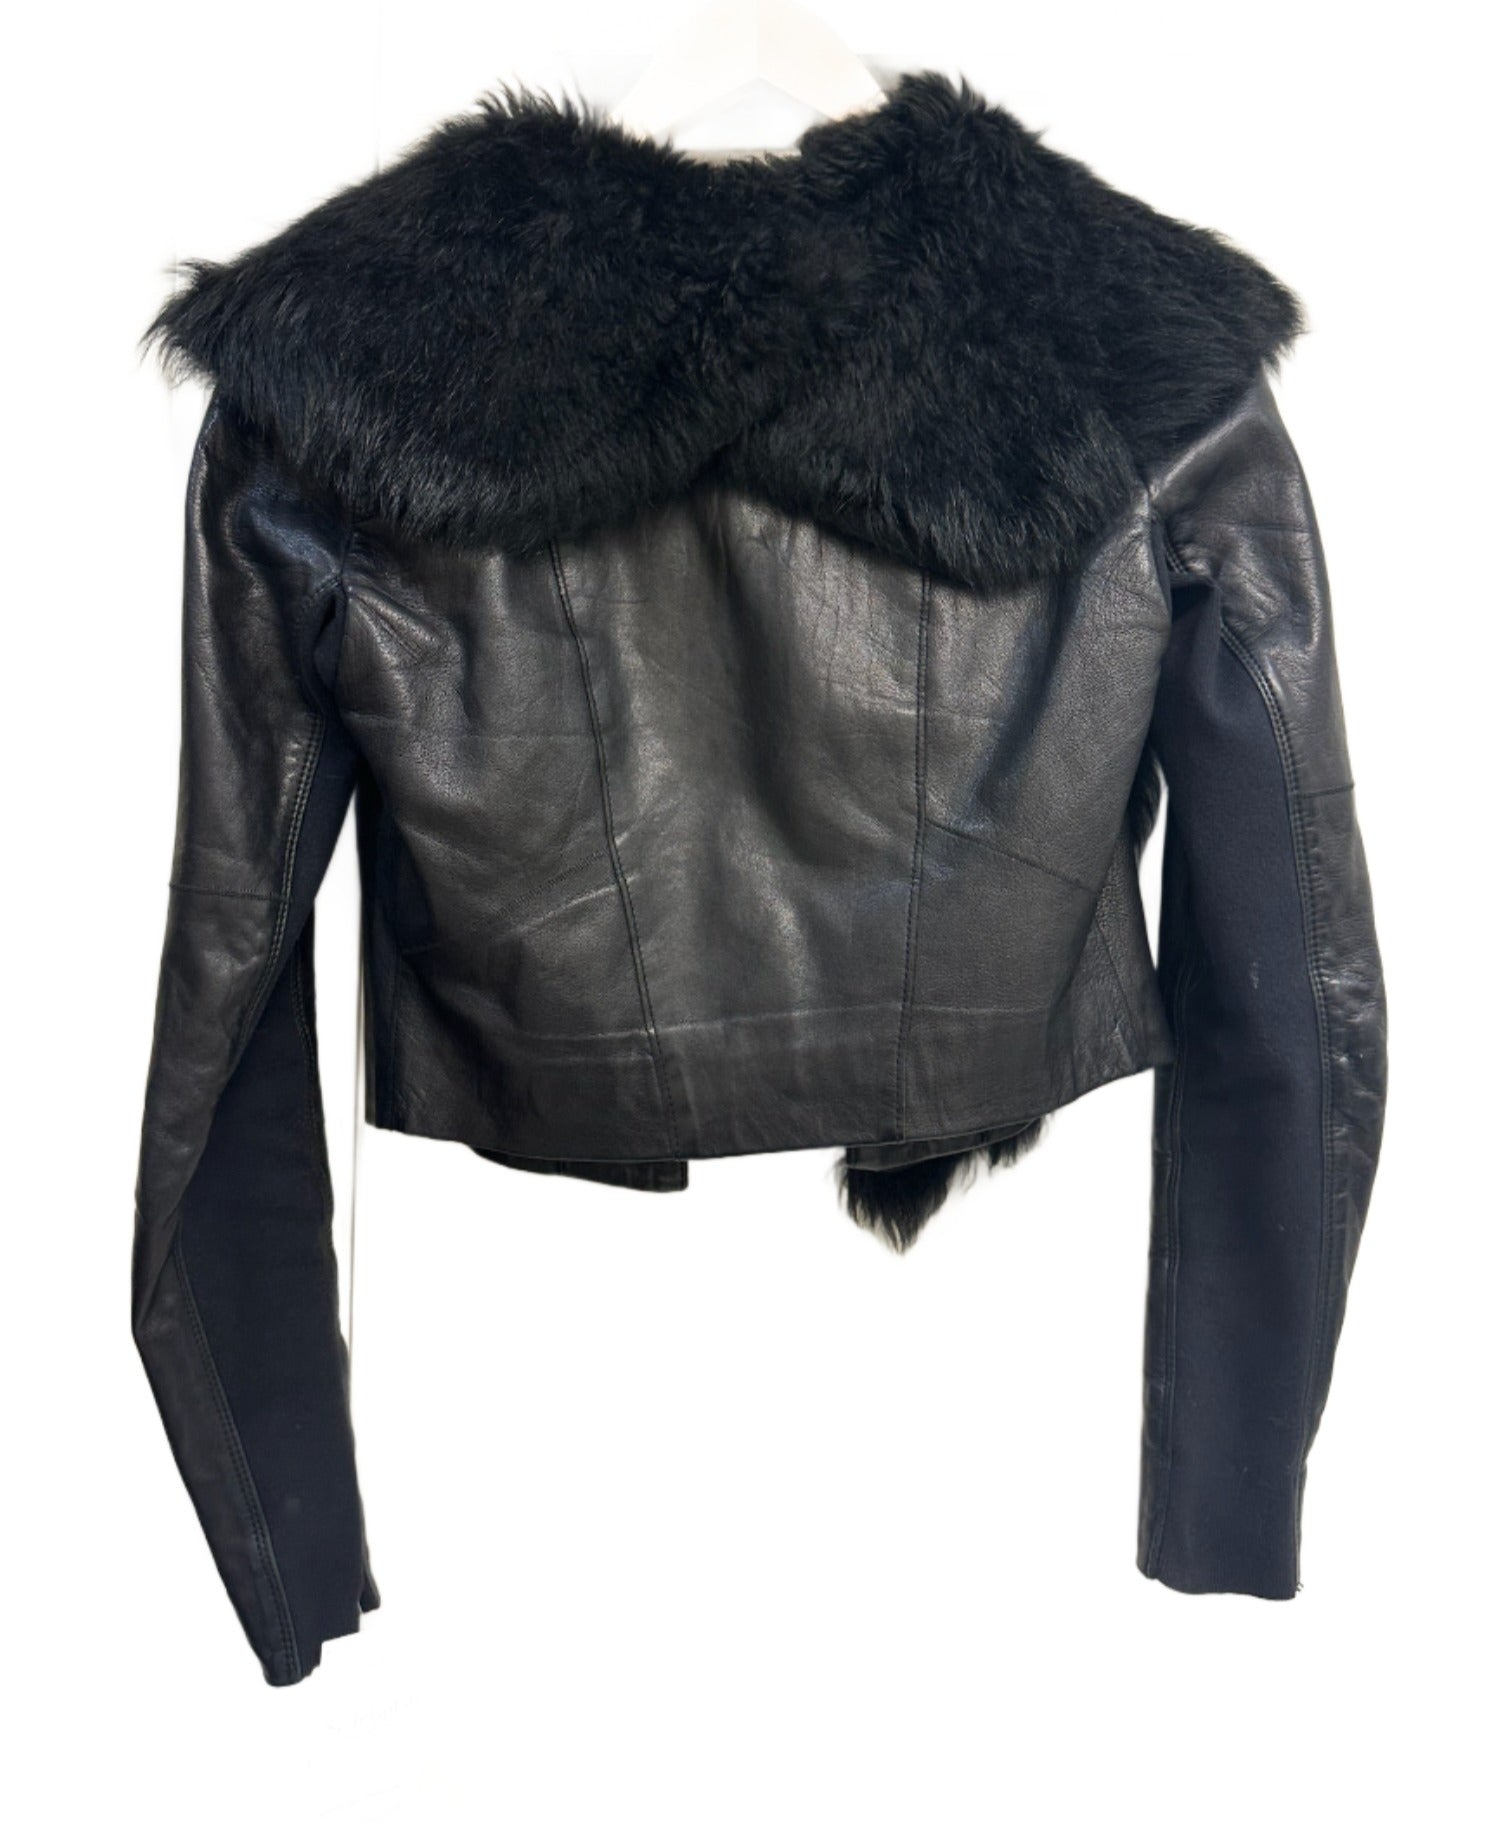 Husk Black Leather Jacket with Fur